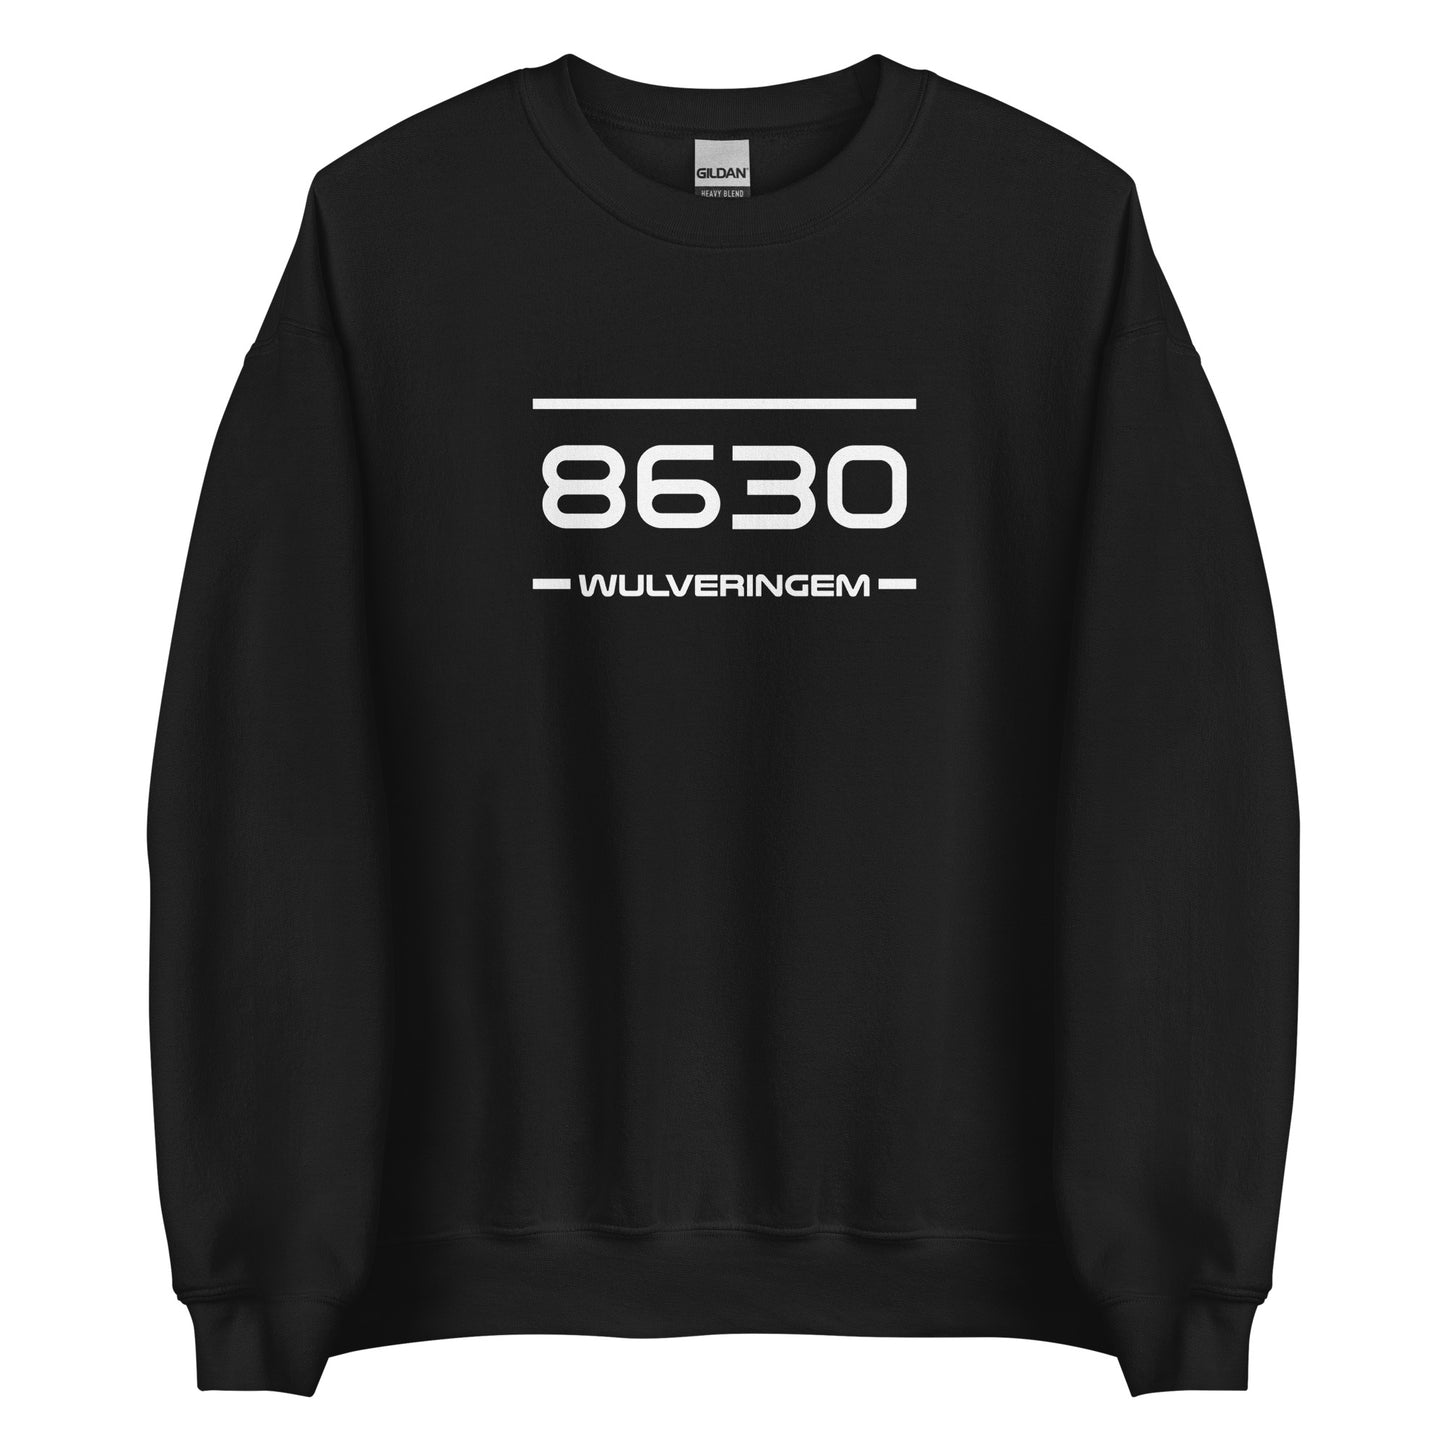 Sweater - 8630 - Wulveringem (M/V)